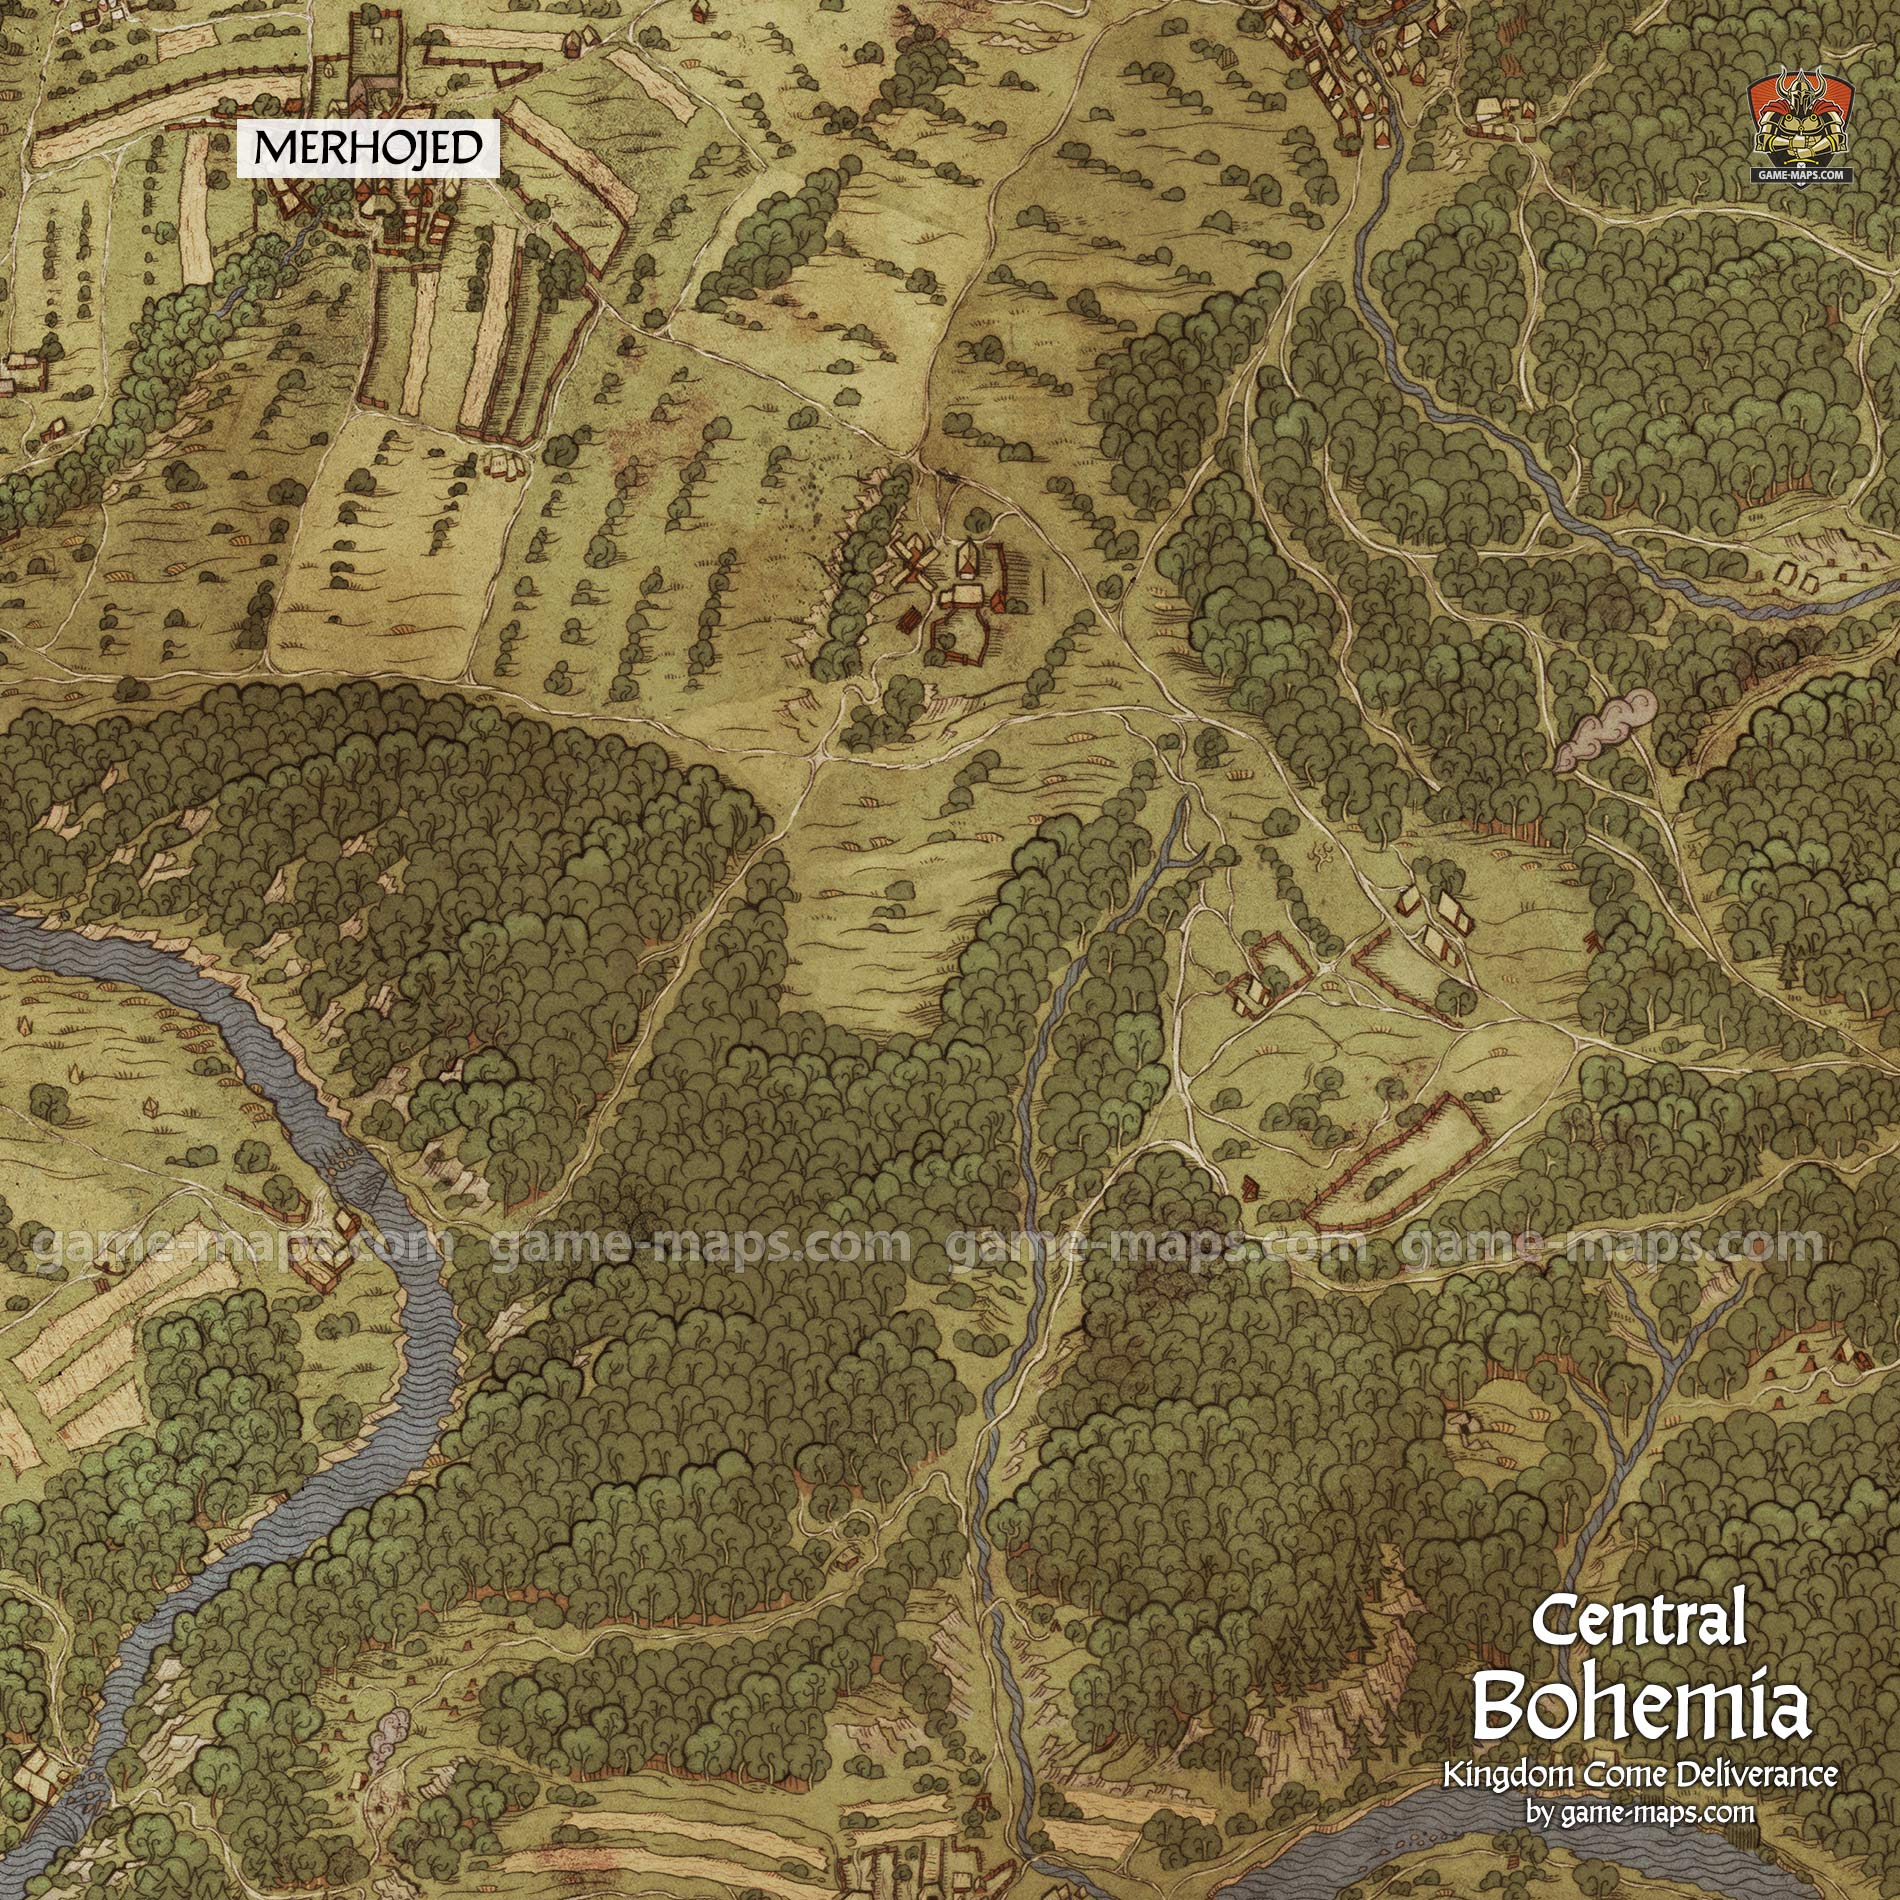 Central Bohemia - Kingdom Come Deliverance Map | game-maps.com